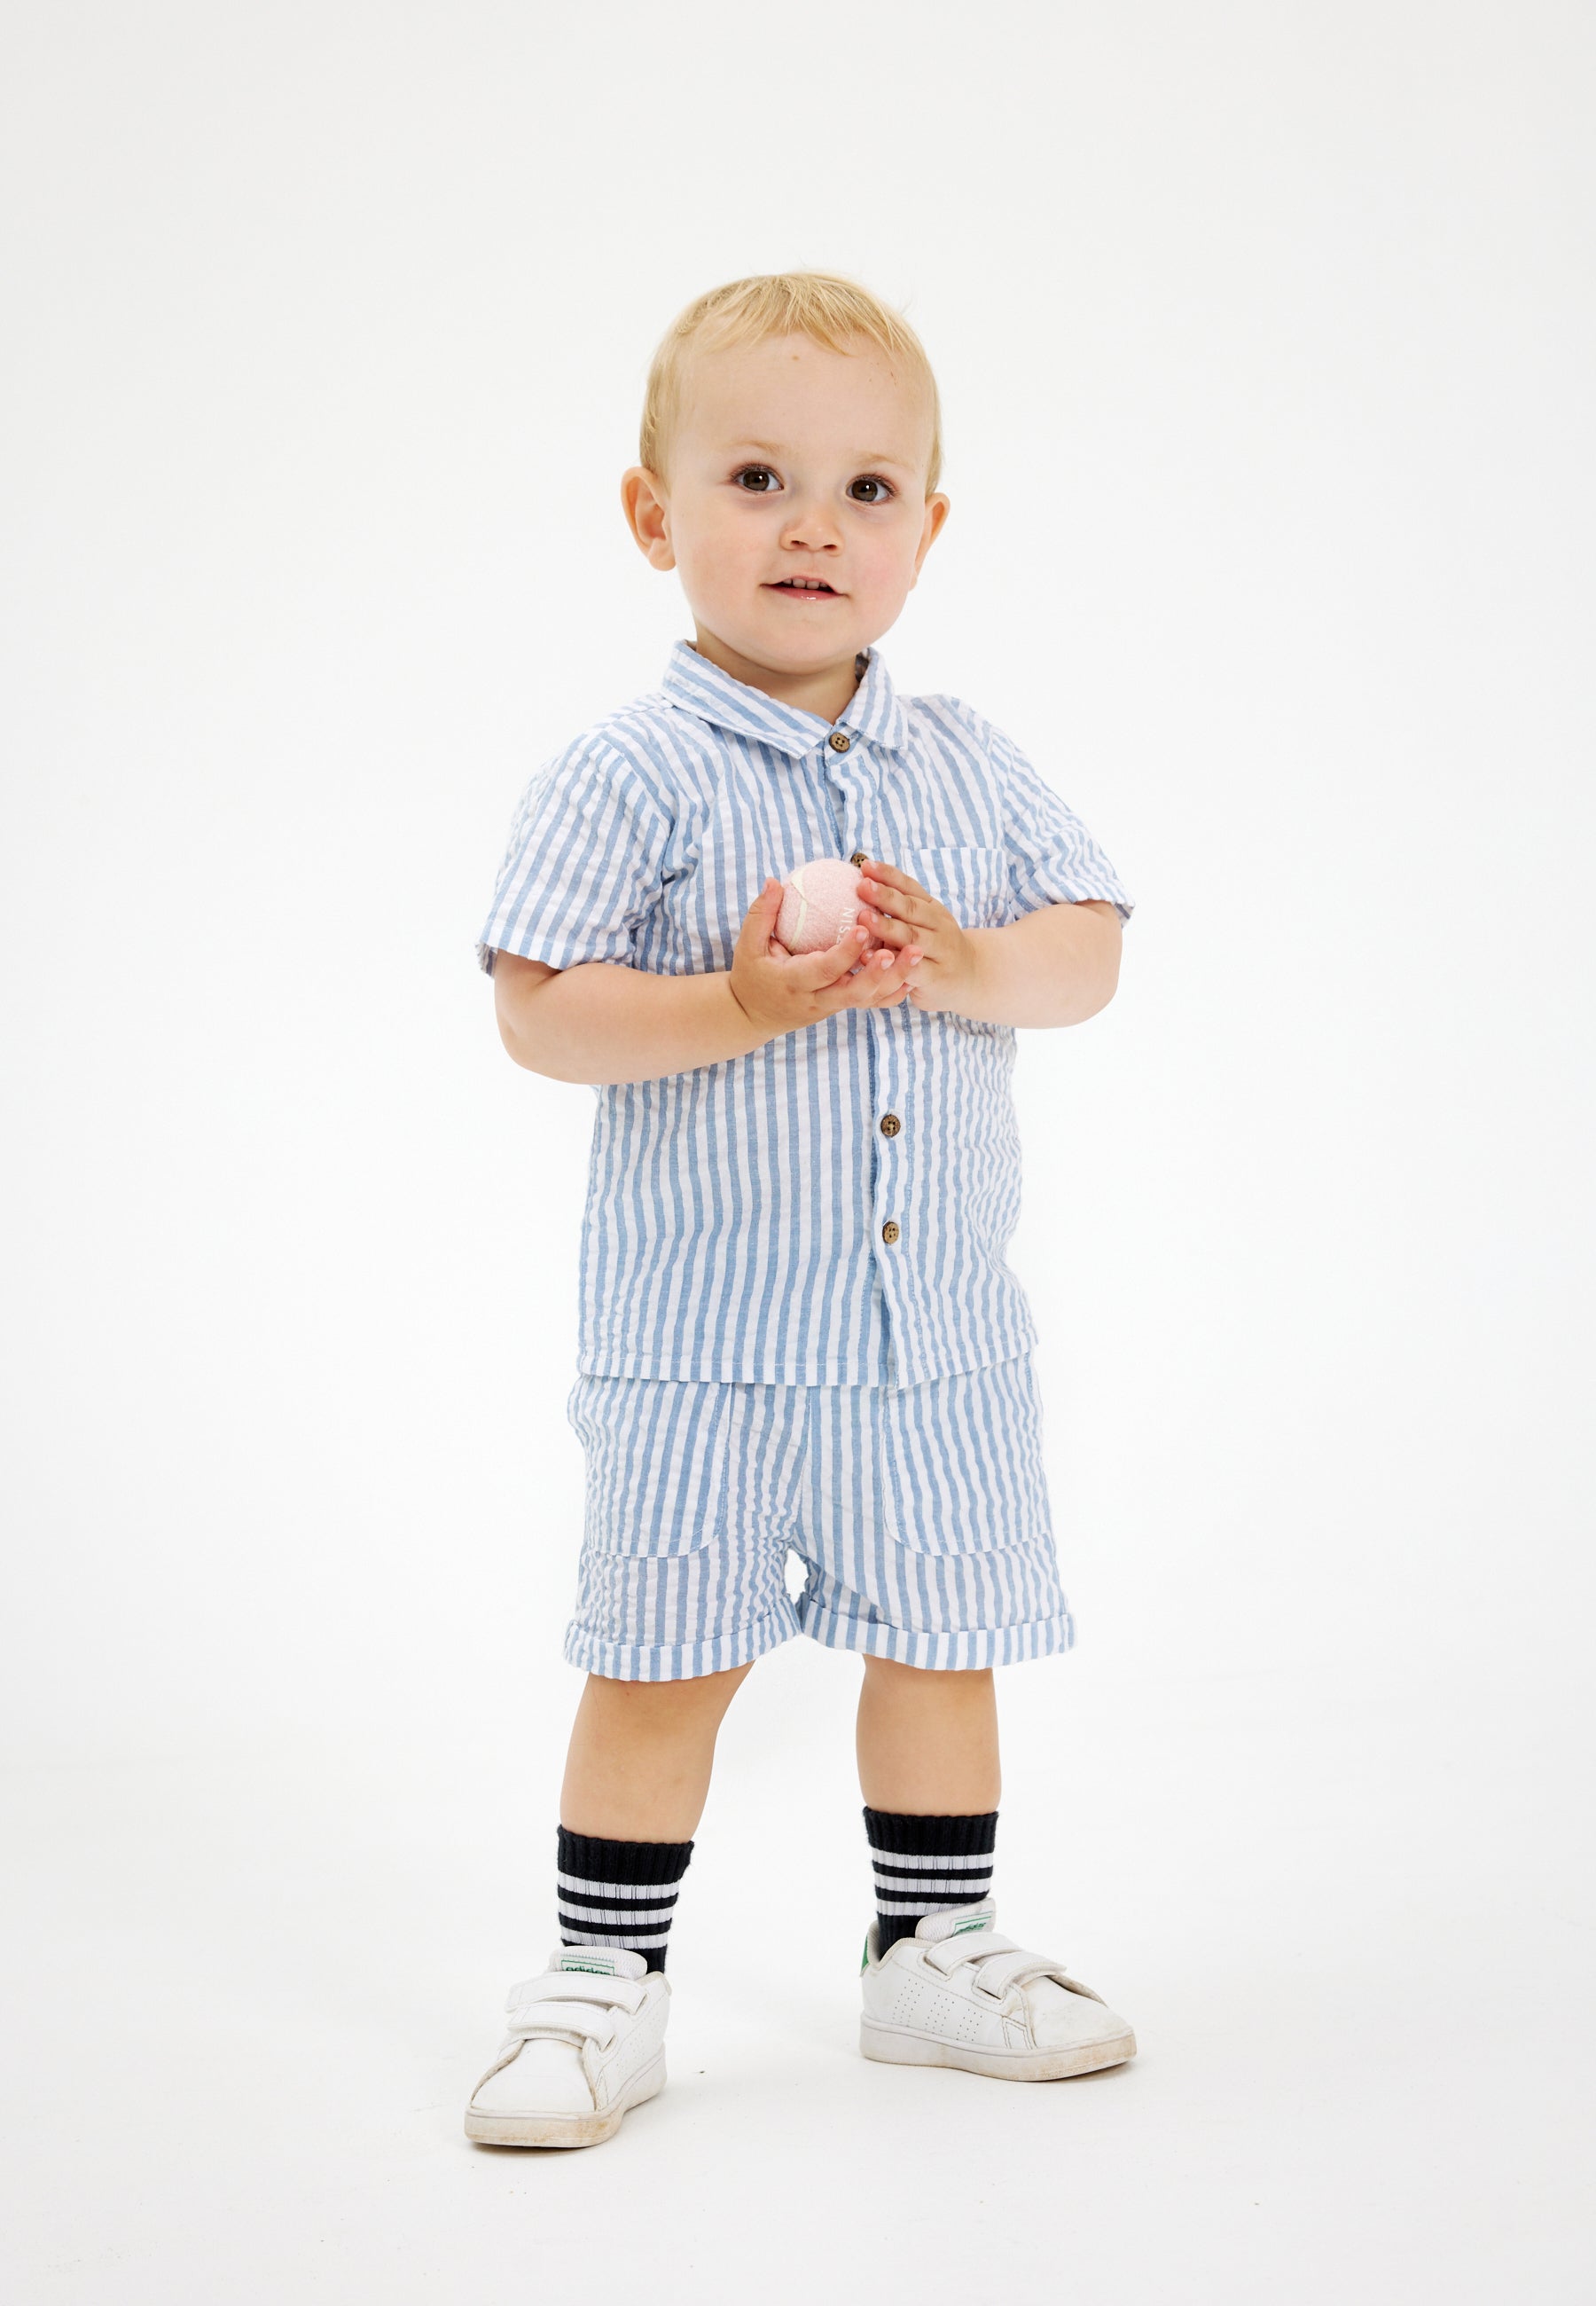 Shop tøj til baby drengen fra 0-4 år. Her hos THE NEW siblings finder du bl.a. nye styles fra Summer 24 kollektionen